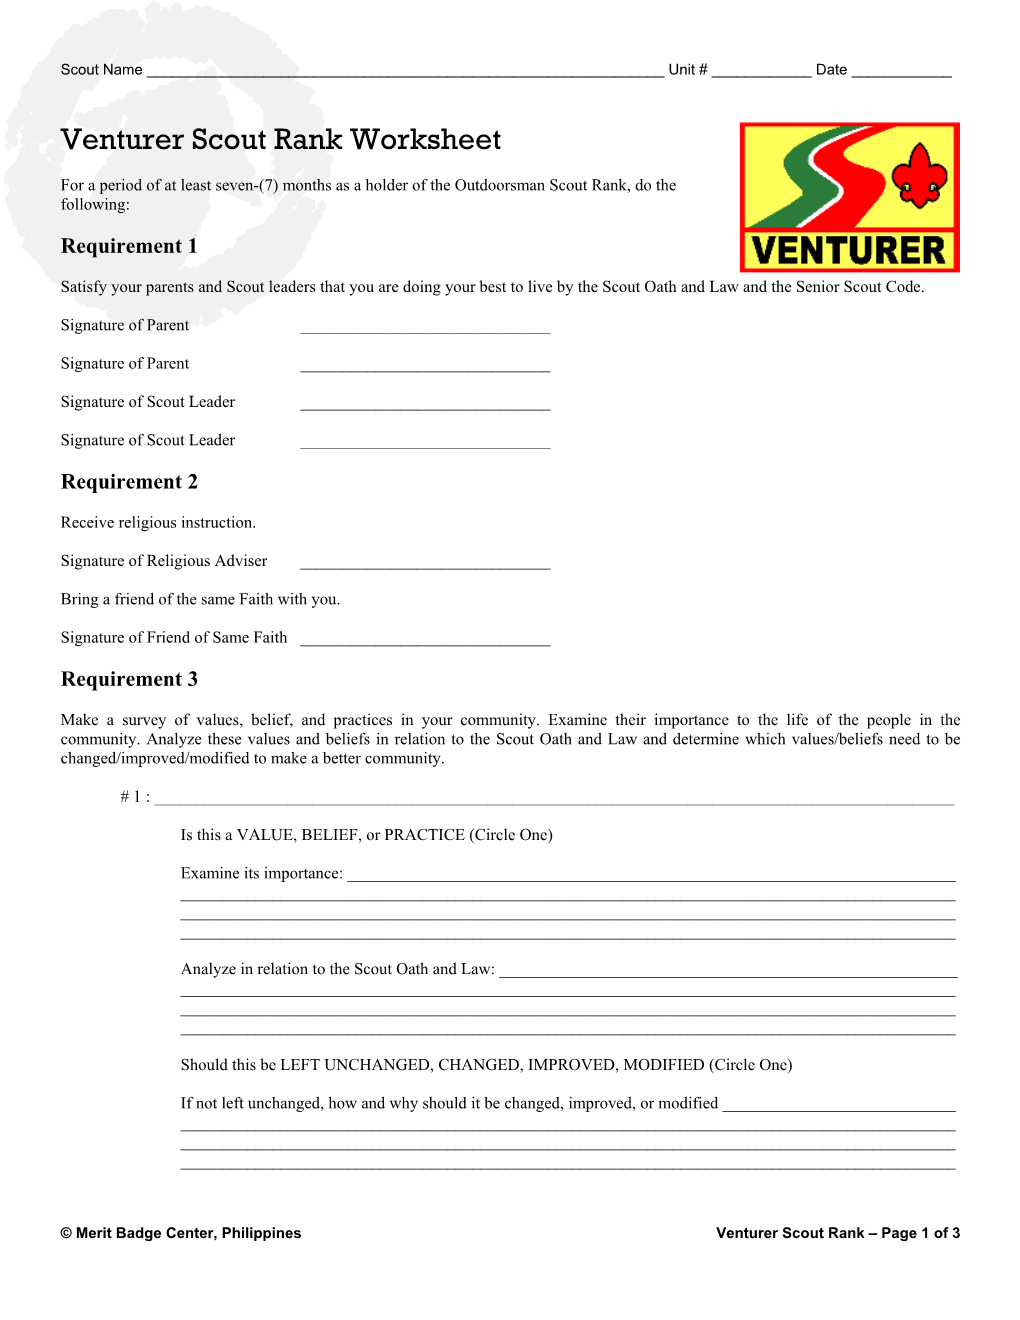 Venturer Scout Rank Worksheet